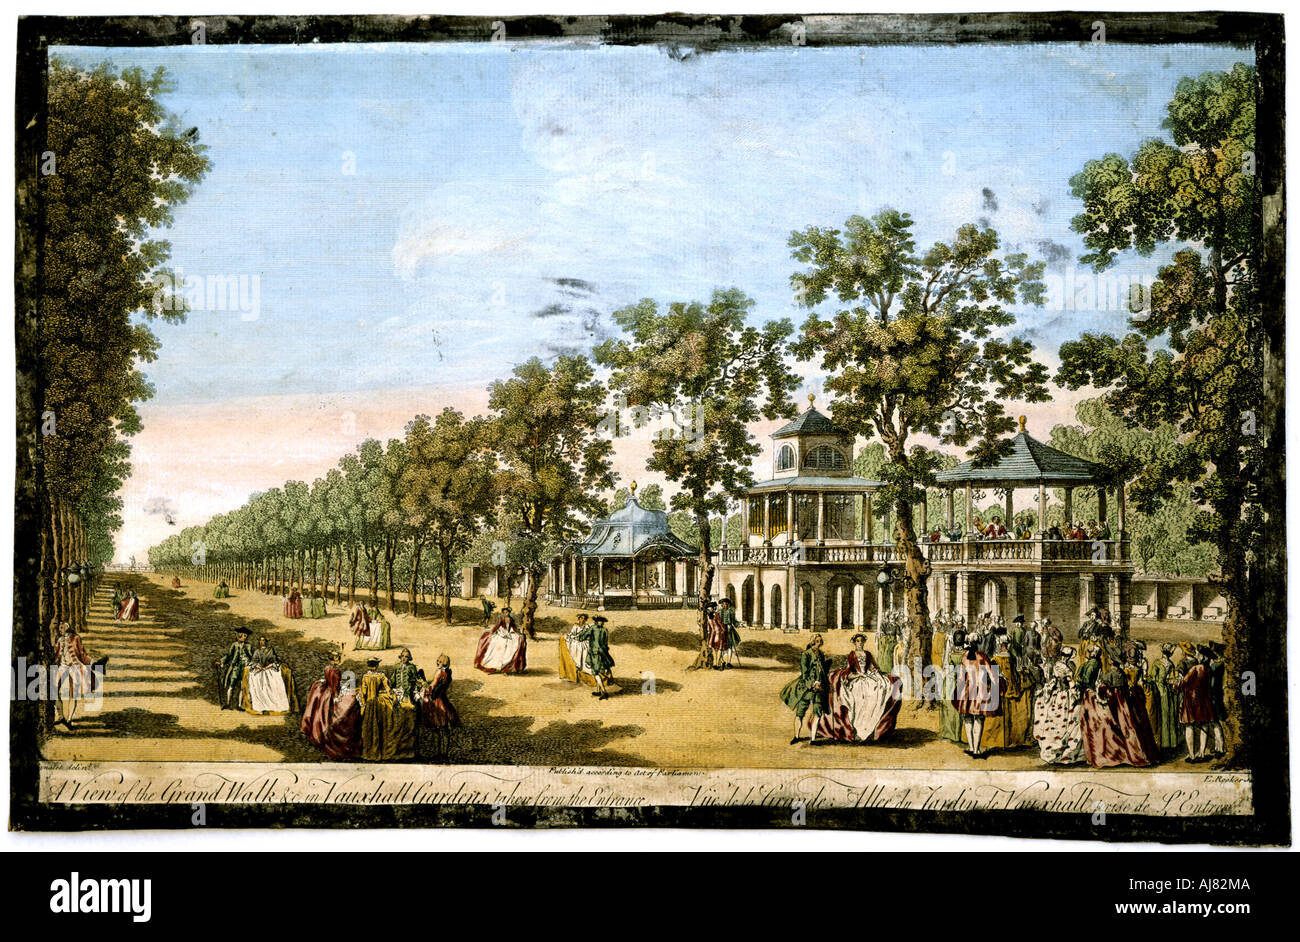 17 век развлечения. Воксхолл парк в Лондоне 19 века. Воксхолл Лондон 18 век. Сад Воксхолл-Гарденз. Воксхолл сад в Лондоне.